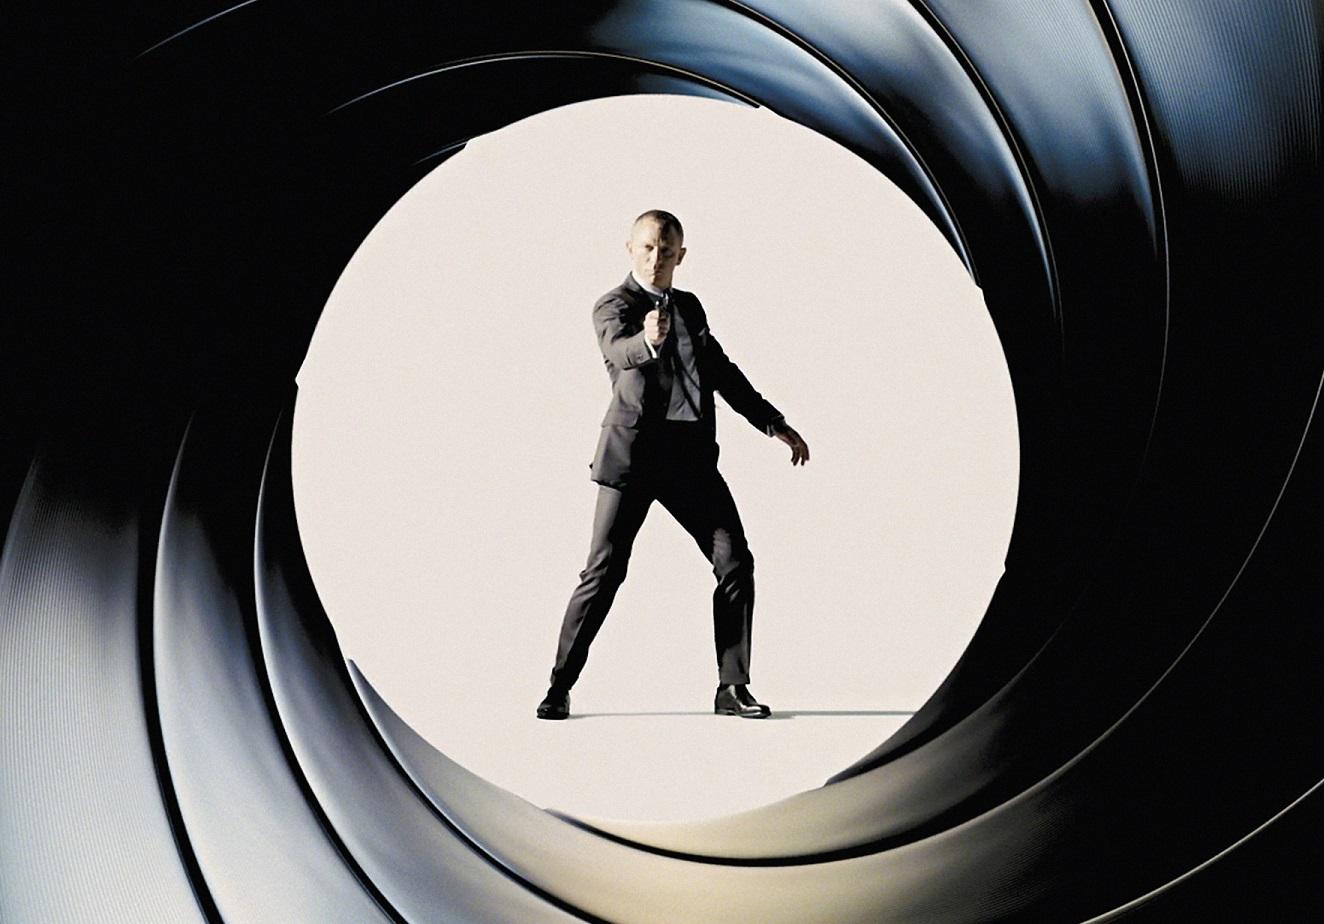 007 Spectre : nouvelle bande-annonce pour le prochain James Bond - Elle